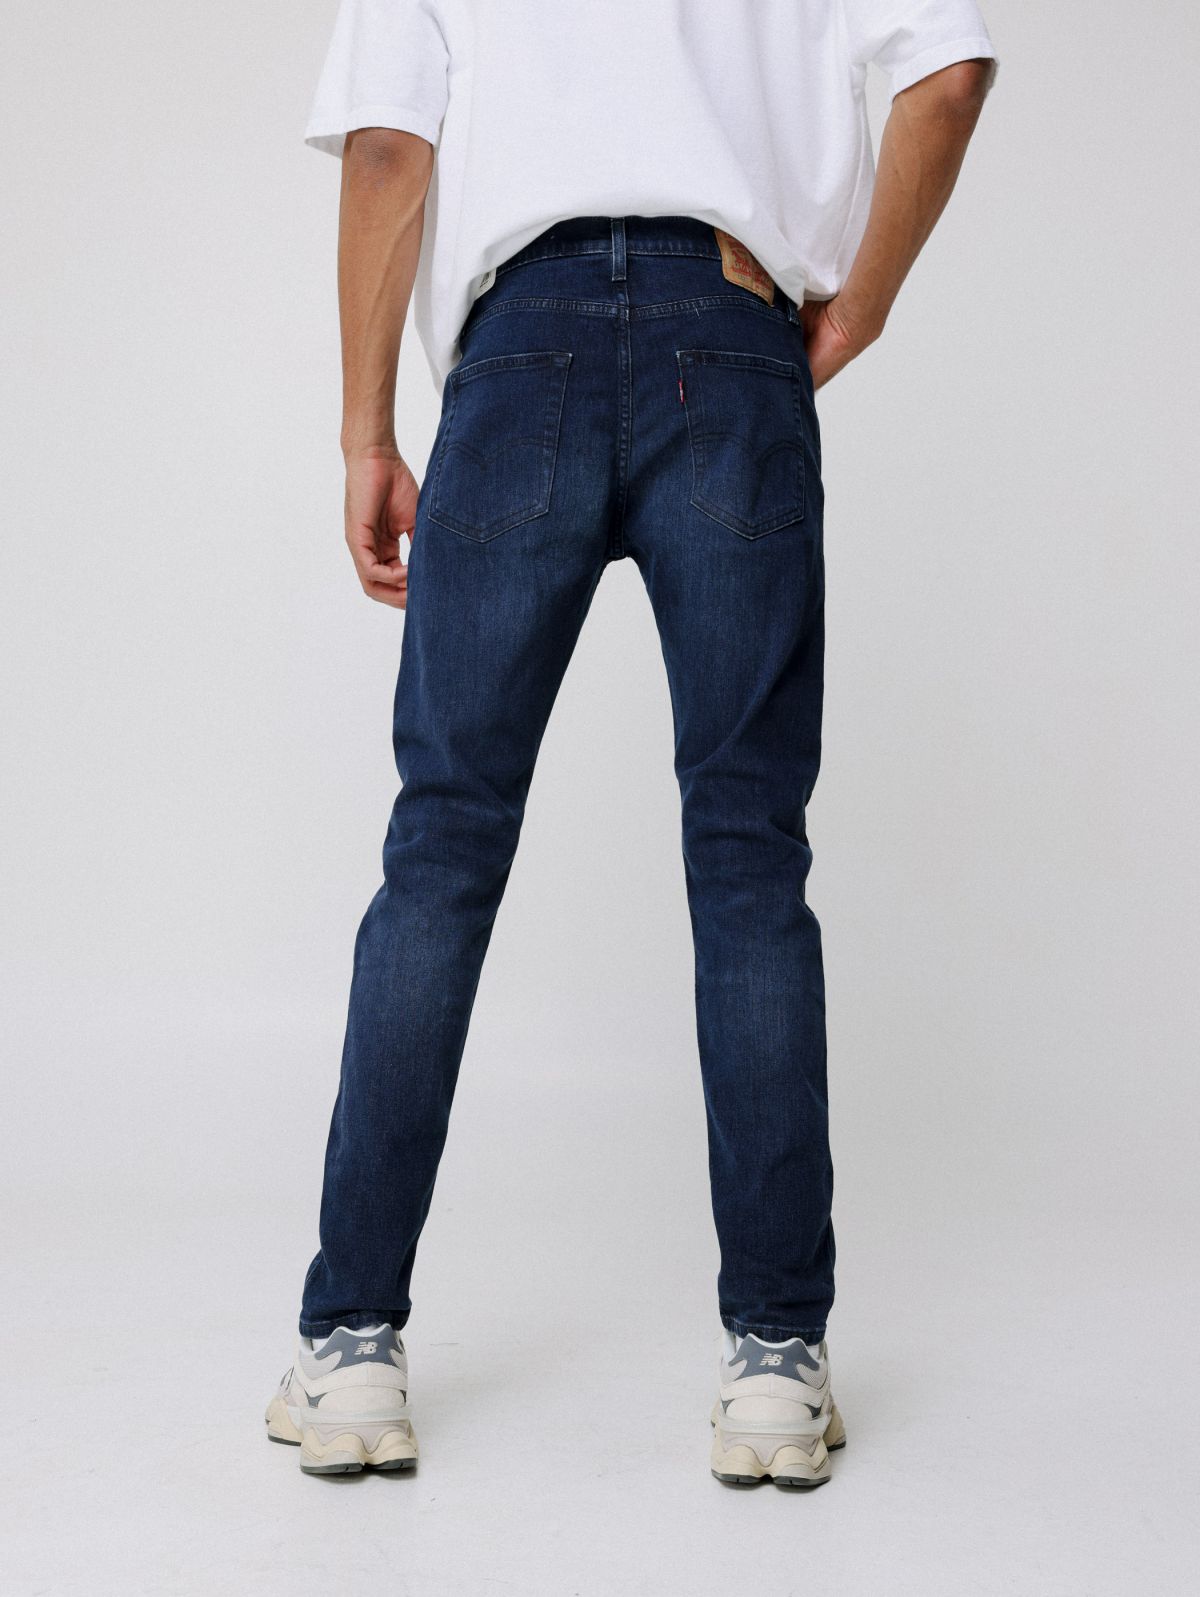  512 Slim ג'ינס של LEVIS